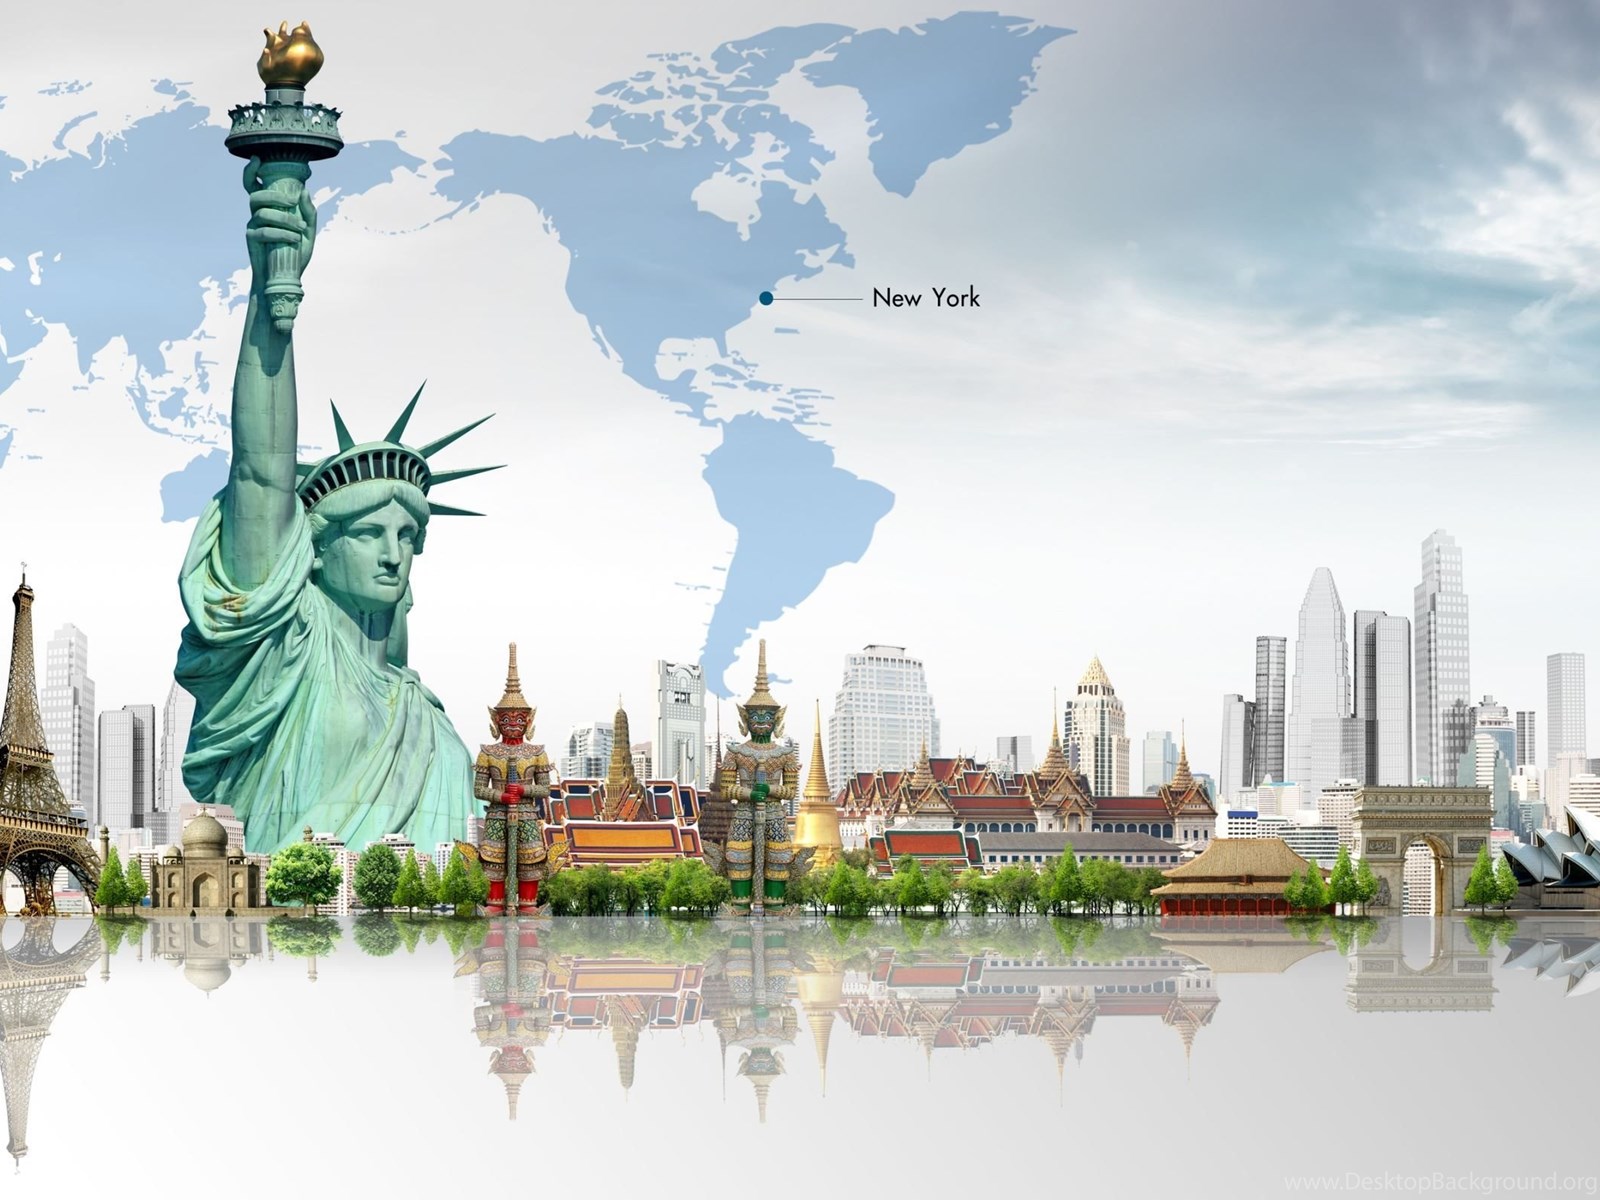 Skyline travel. Статуя свободы Нью-Йорк. Статуя свободы Нью-Йорк путешествие. Нью-Йорк Сити статуя свободы. Статуя свободы на фоне Нью-Йорка.